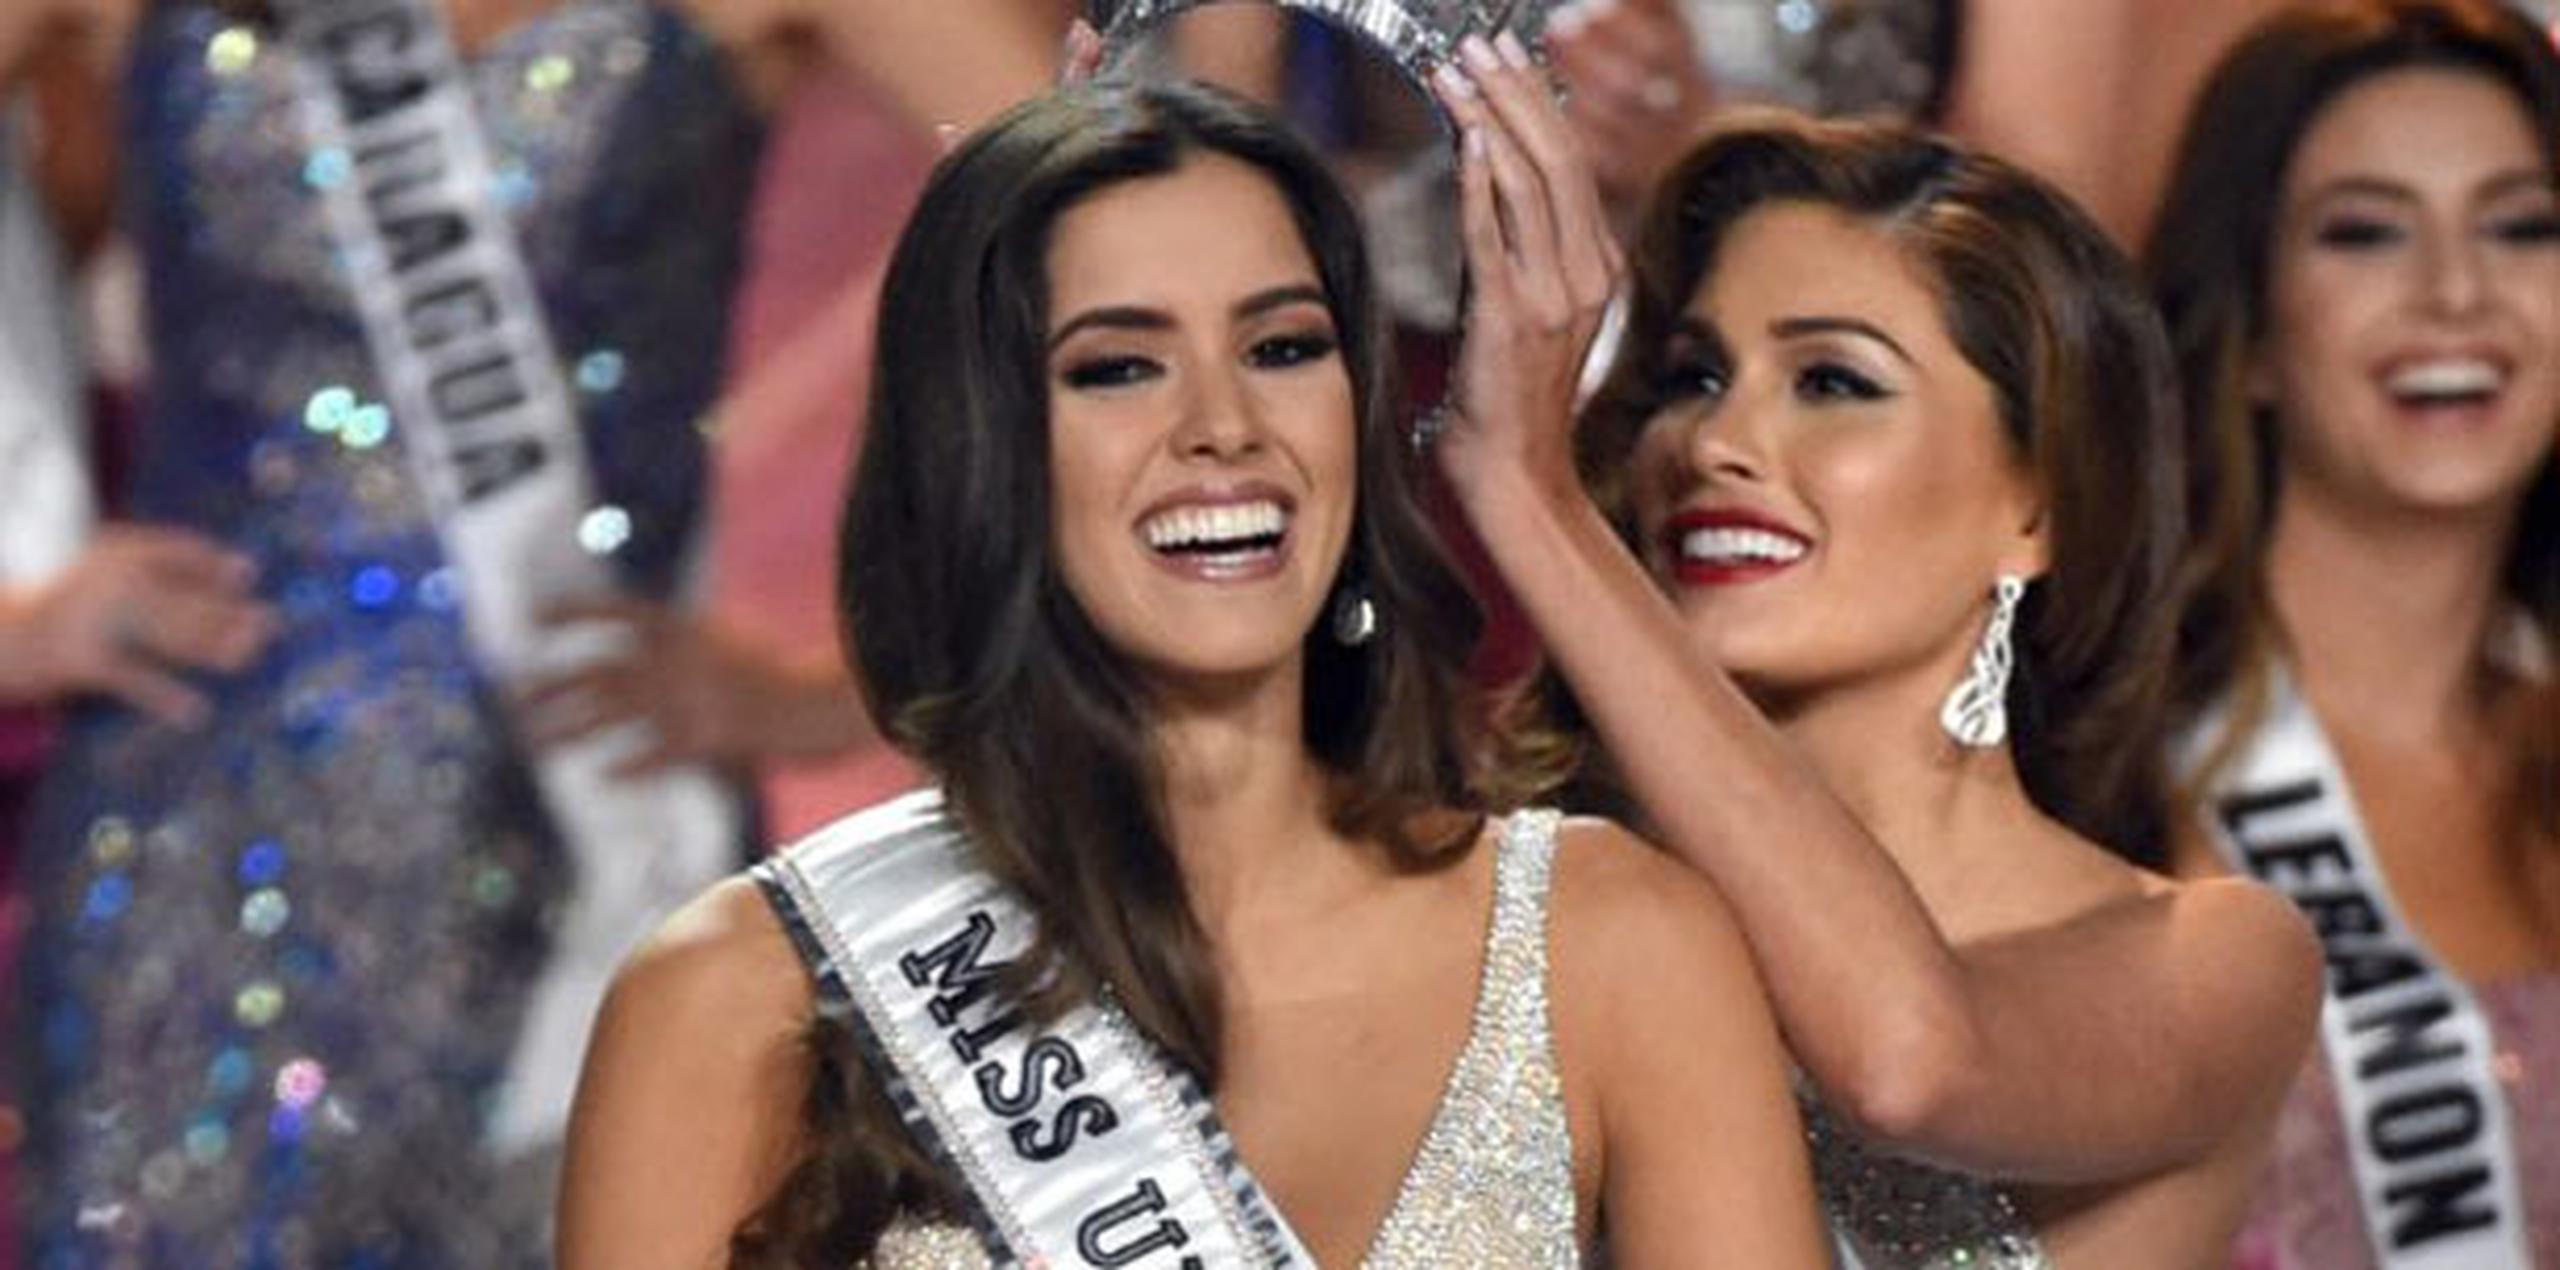 Los primeros cuatro lugares de la encuesta mensual de Nielsen fueron de Telemundo. Miss Universe ocupó el primer lugar.